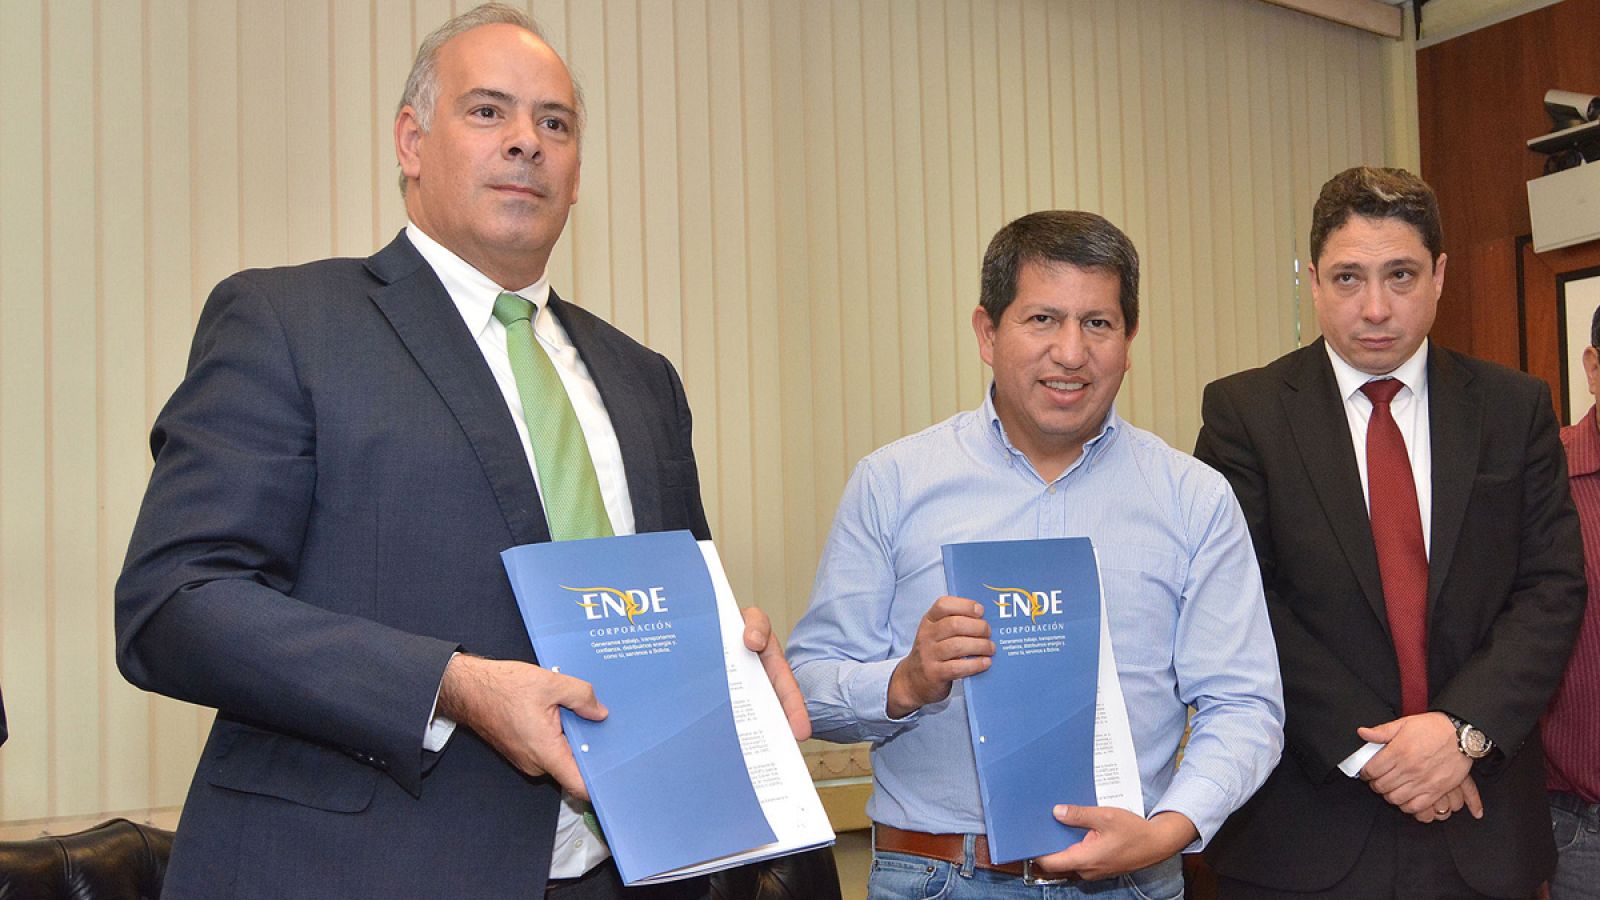 El representante de empresas Iberdrola, S.A. e Iberdrola Energía, S.A.U., Mario Ruiz Tagle (i), y el ministro boliviano de Hidrocarburos y Energía, Luis Alberto Sánchez, firman un acuerdo de compensación